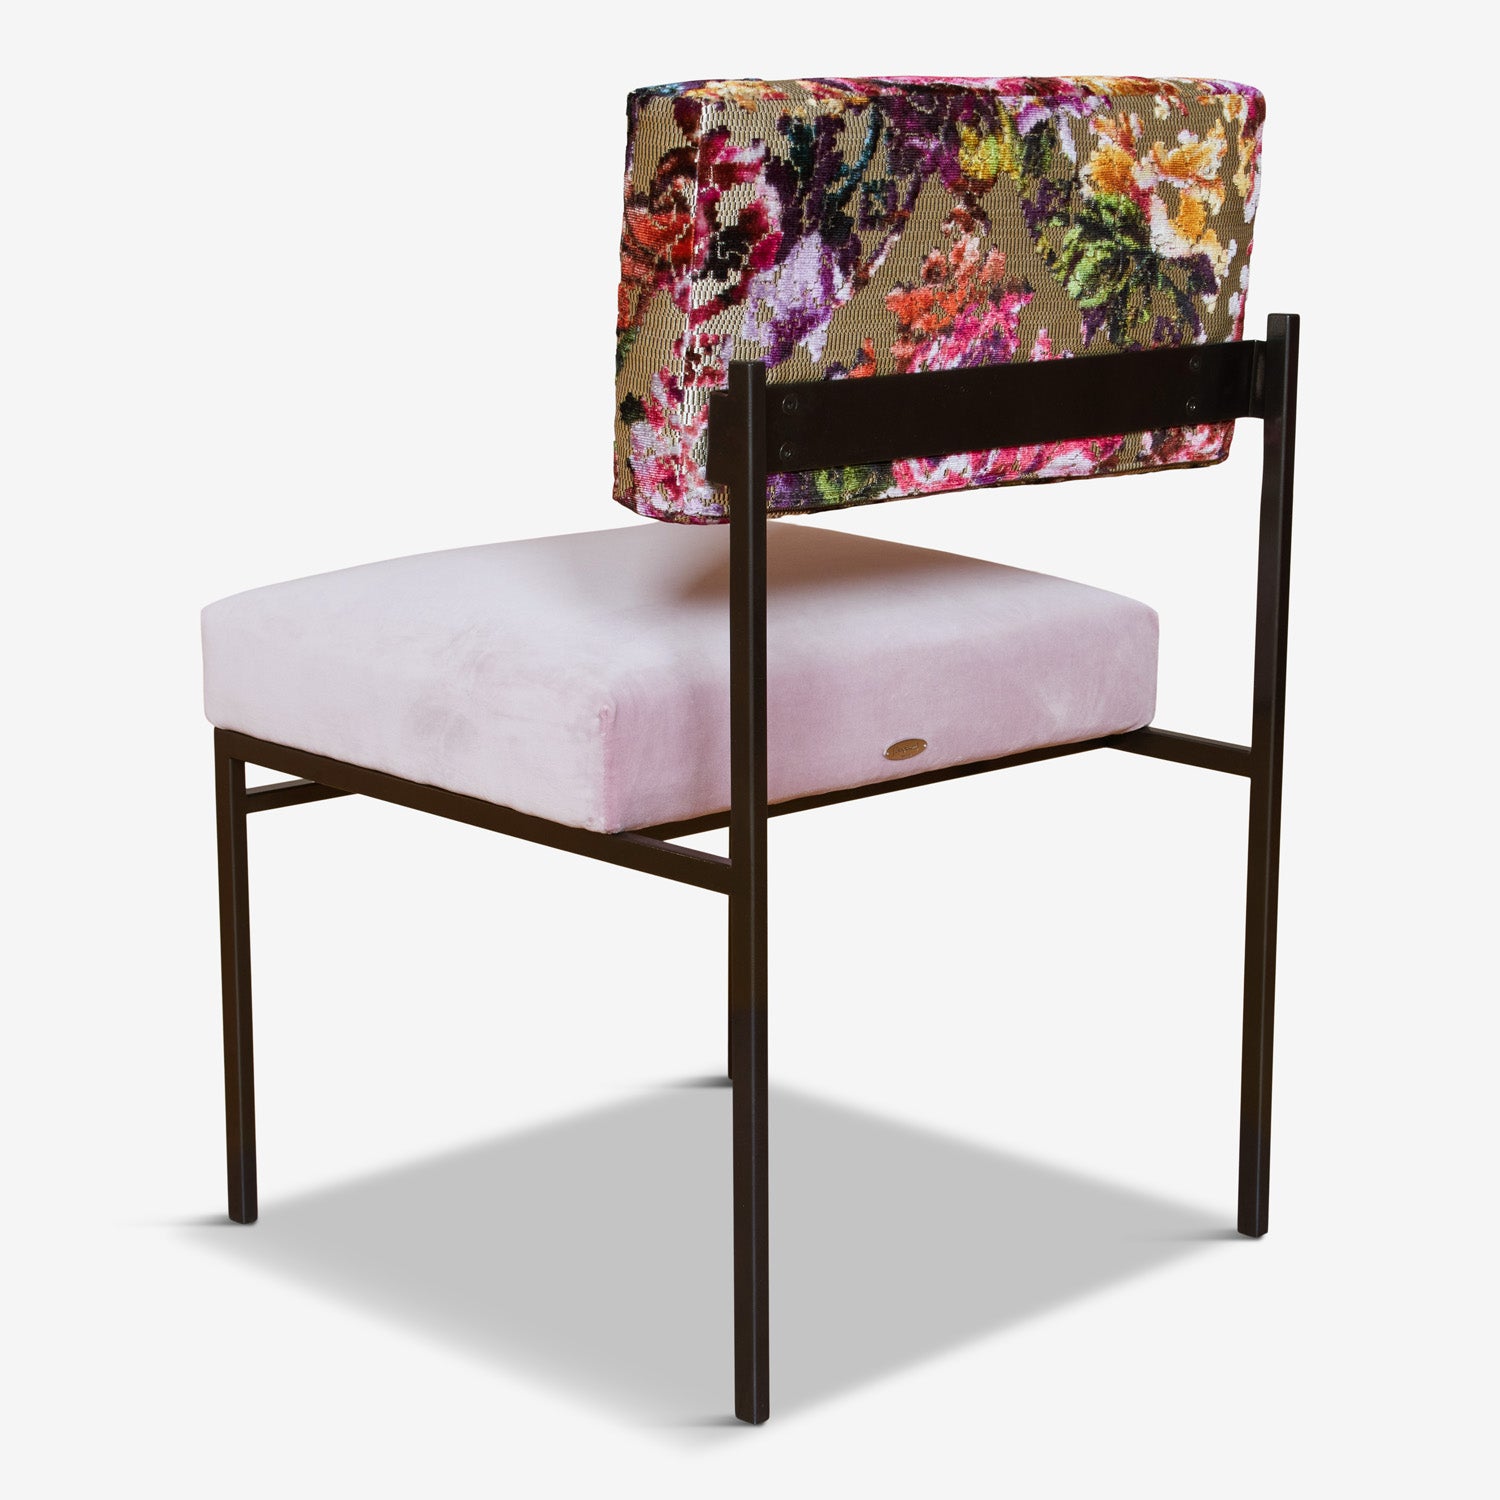 CTRLZAK designed eco-friendly Aurea chair